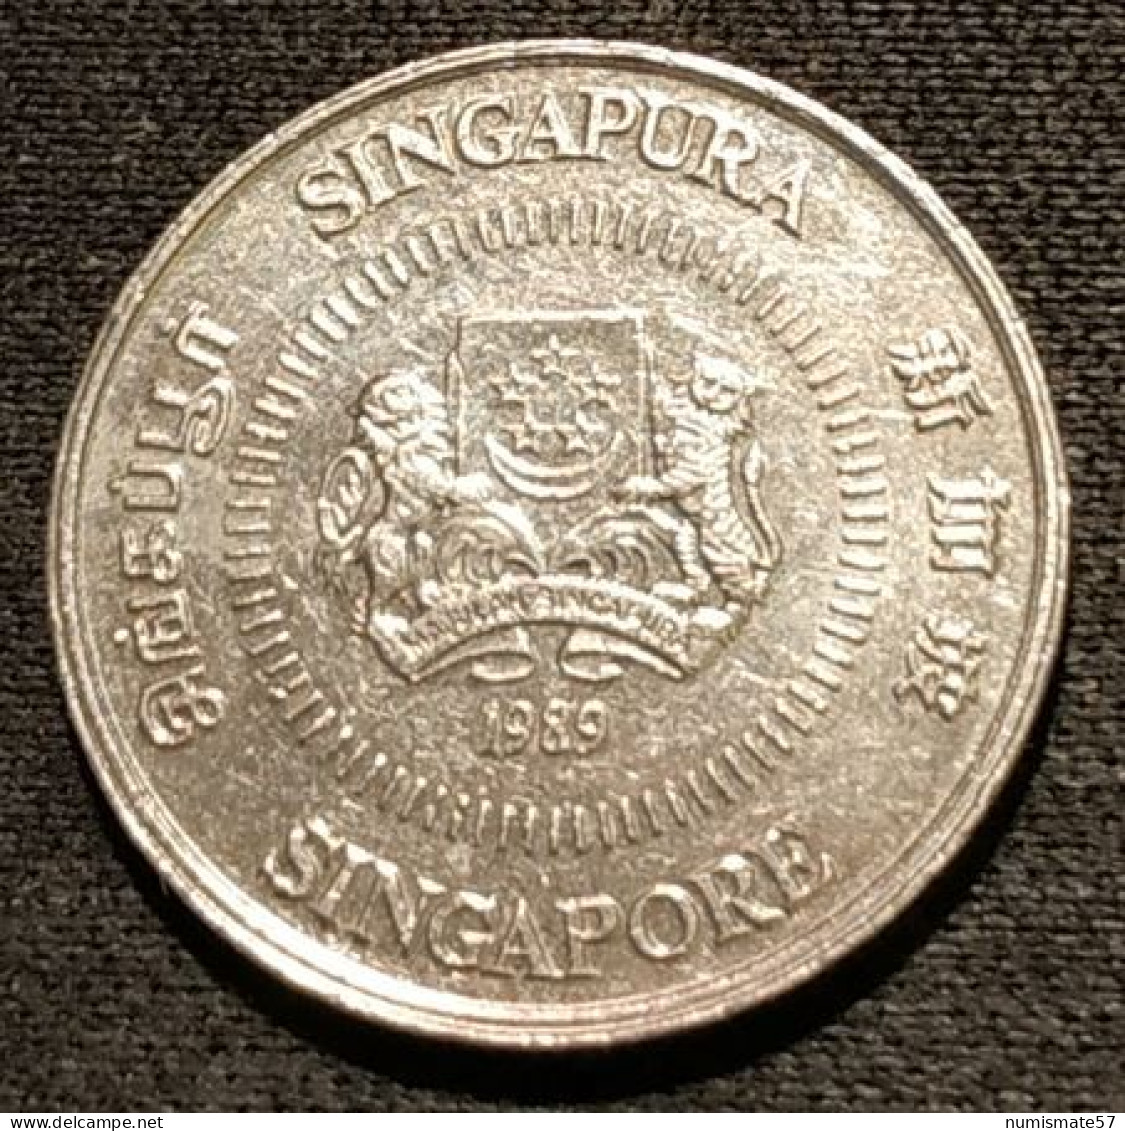 SINGAPOUR - SINGAPORE - 10 CENTS 1989 - KM 51 - ( Blason Haut ) - Singapur